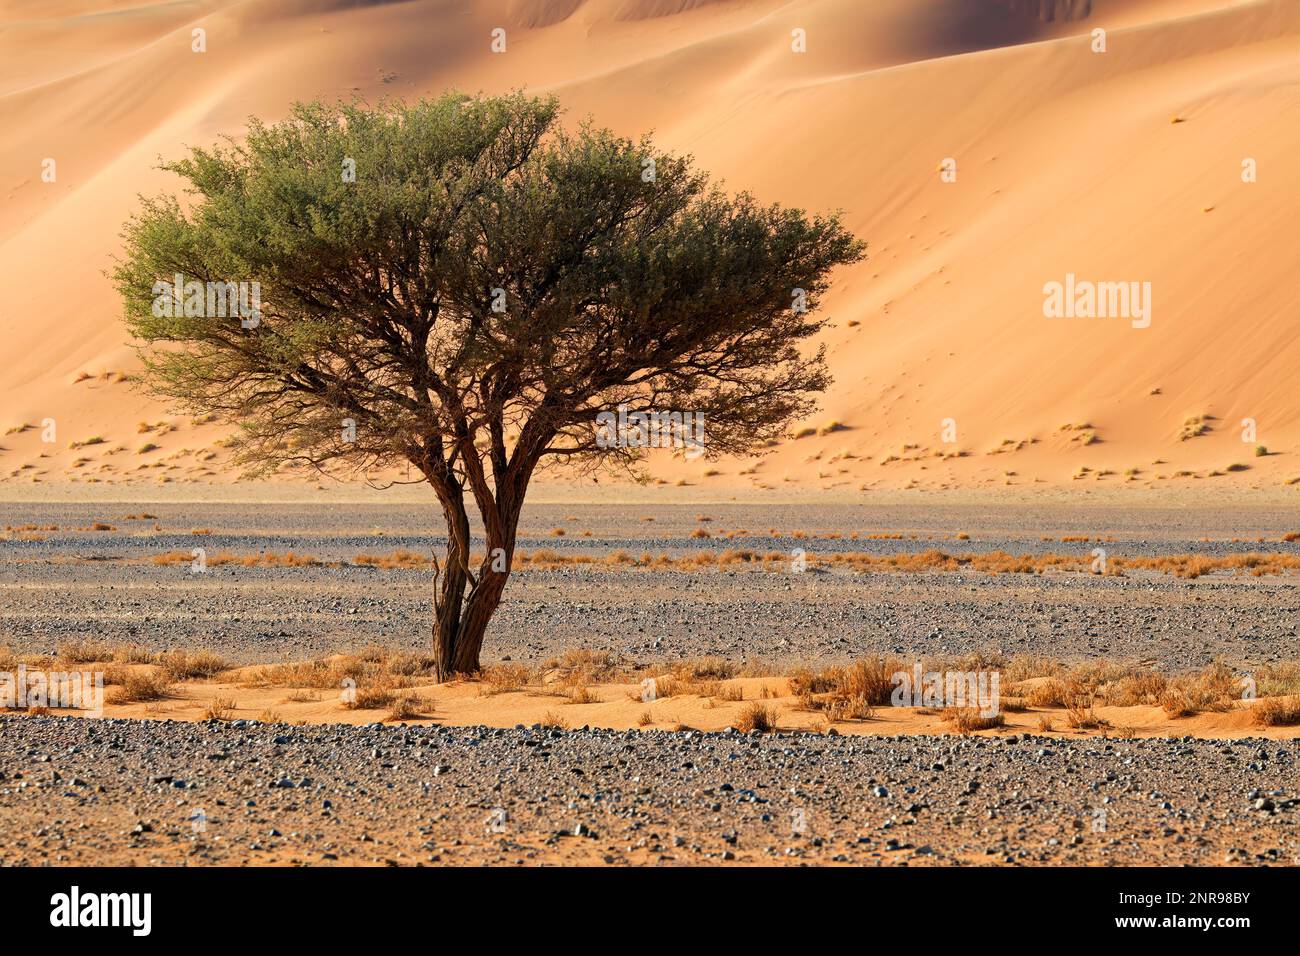 Desert landscape with thorn tree, Sossusvlei, Namib desert, Namibia Stock Photo